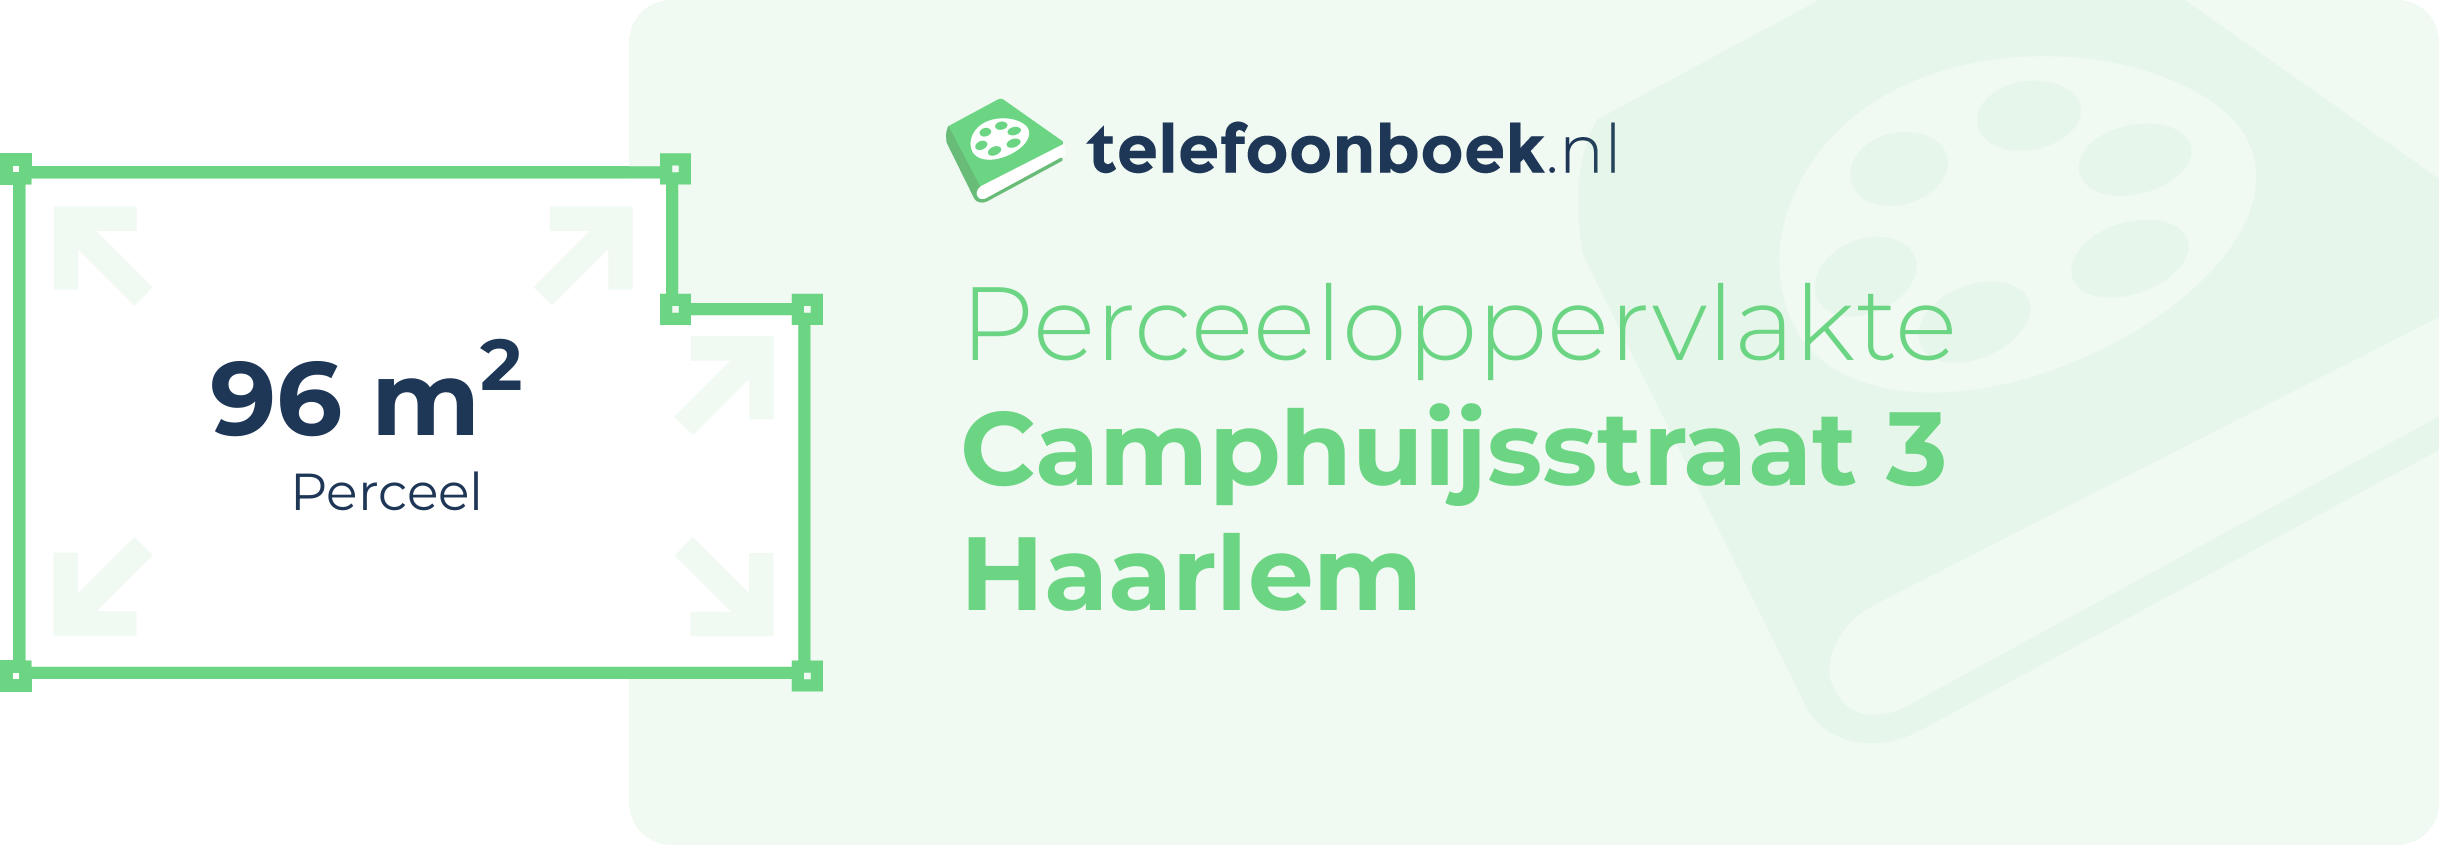 Perceeloppervlakte Camphuijsstraat 3 Haarlem